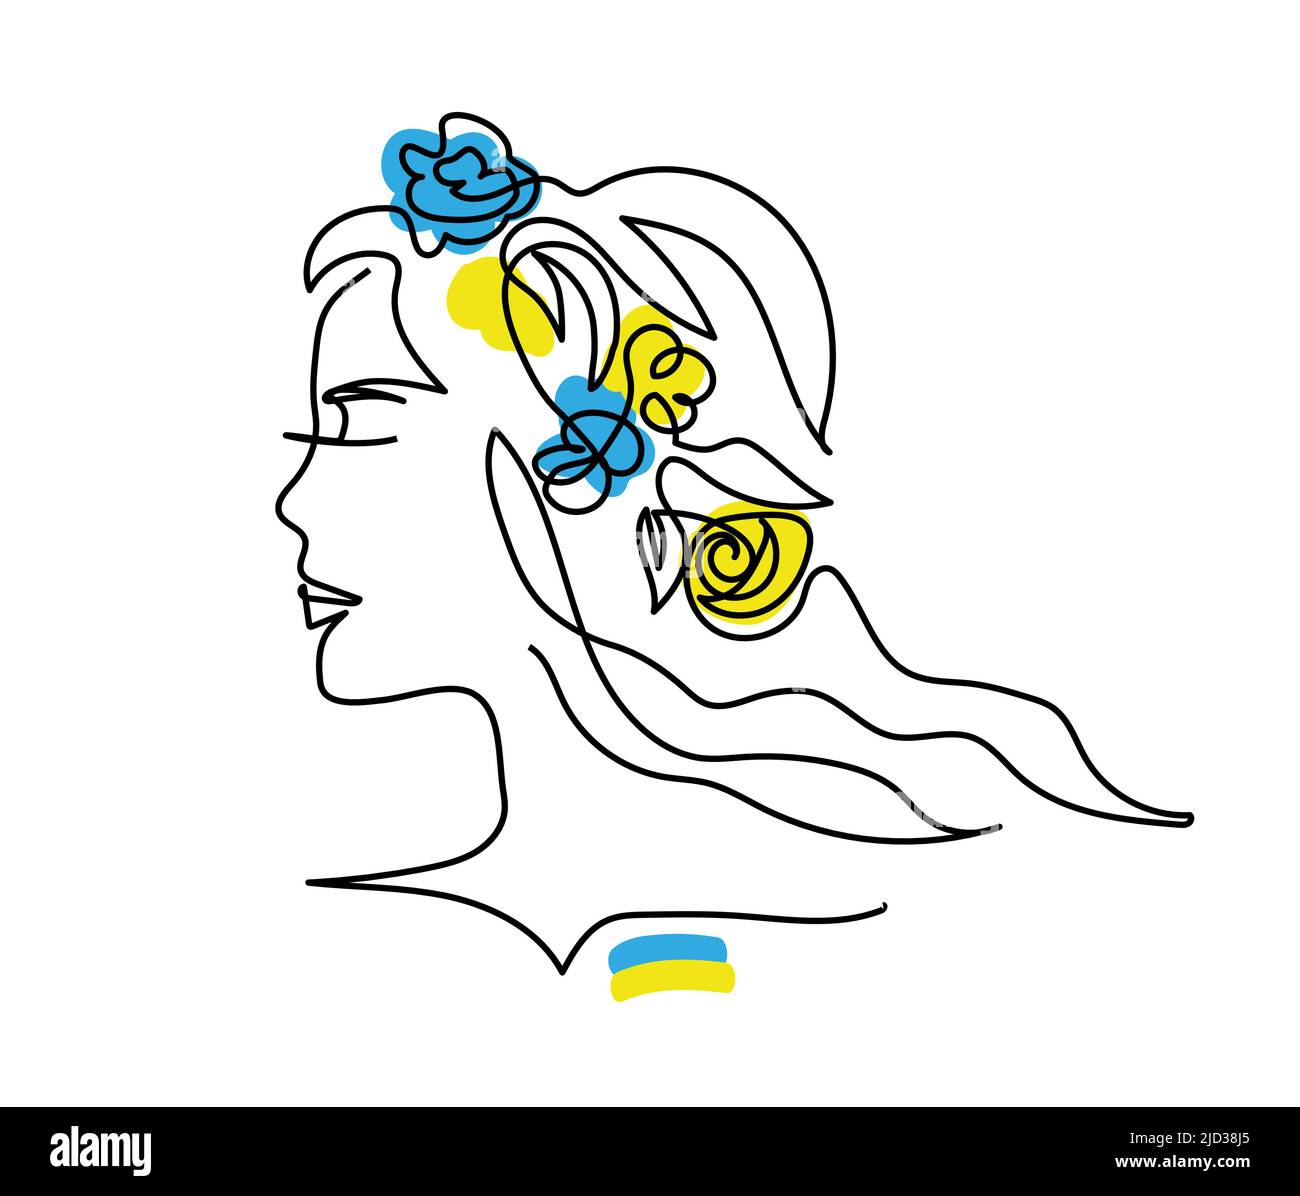 Kopf in Blumen. Ukrainische Flagge. Blaue und gelbe Blüten im Kopfvektor. Frauenprofil. Eine fortlaufende Strichzeichnung Stock Vektor